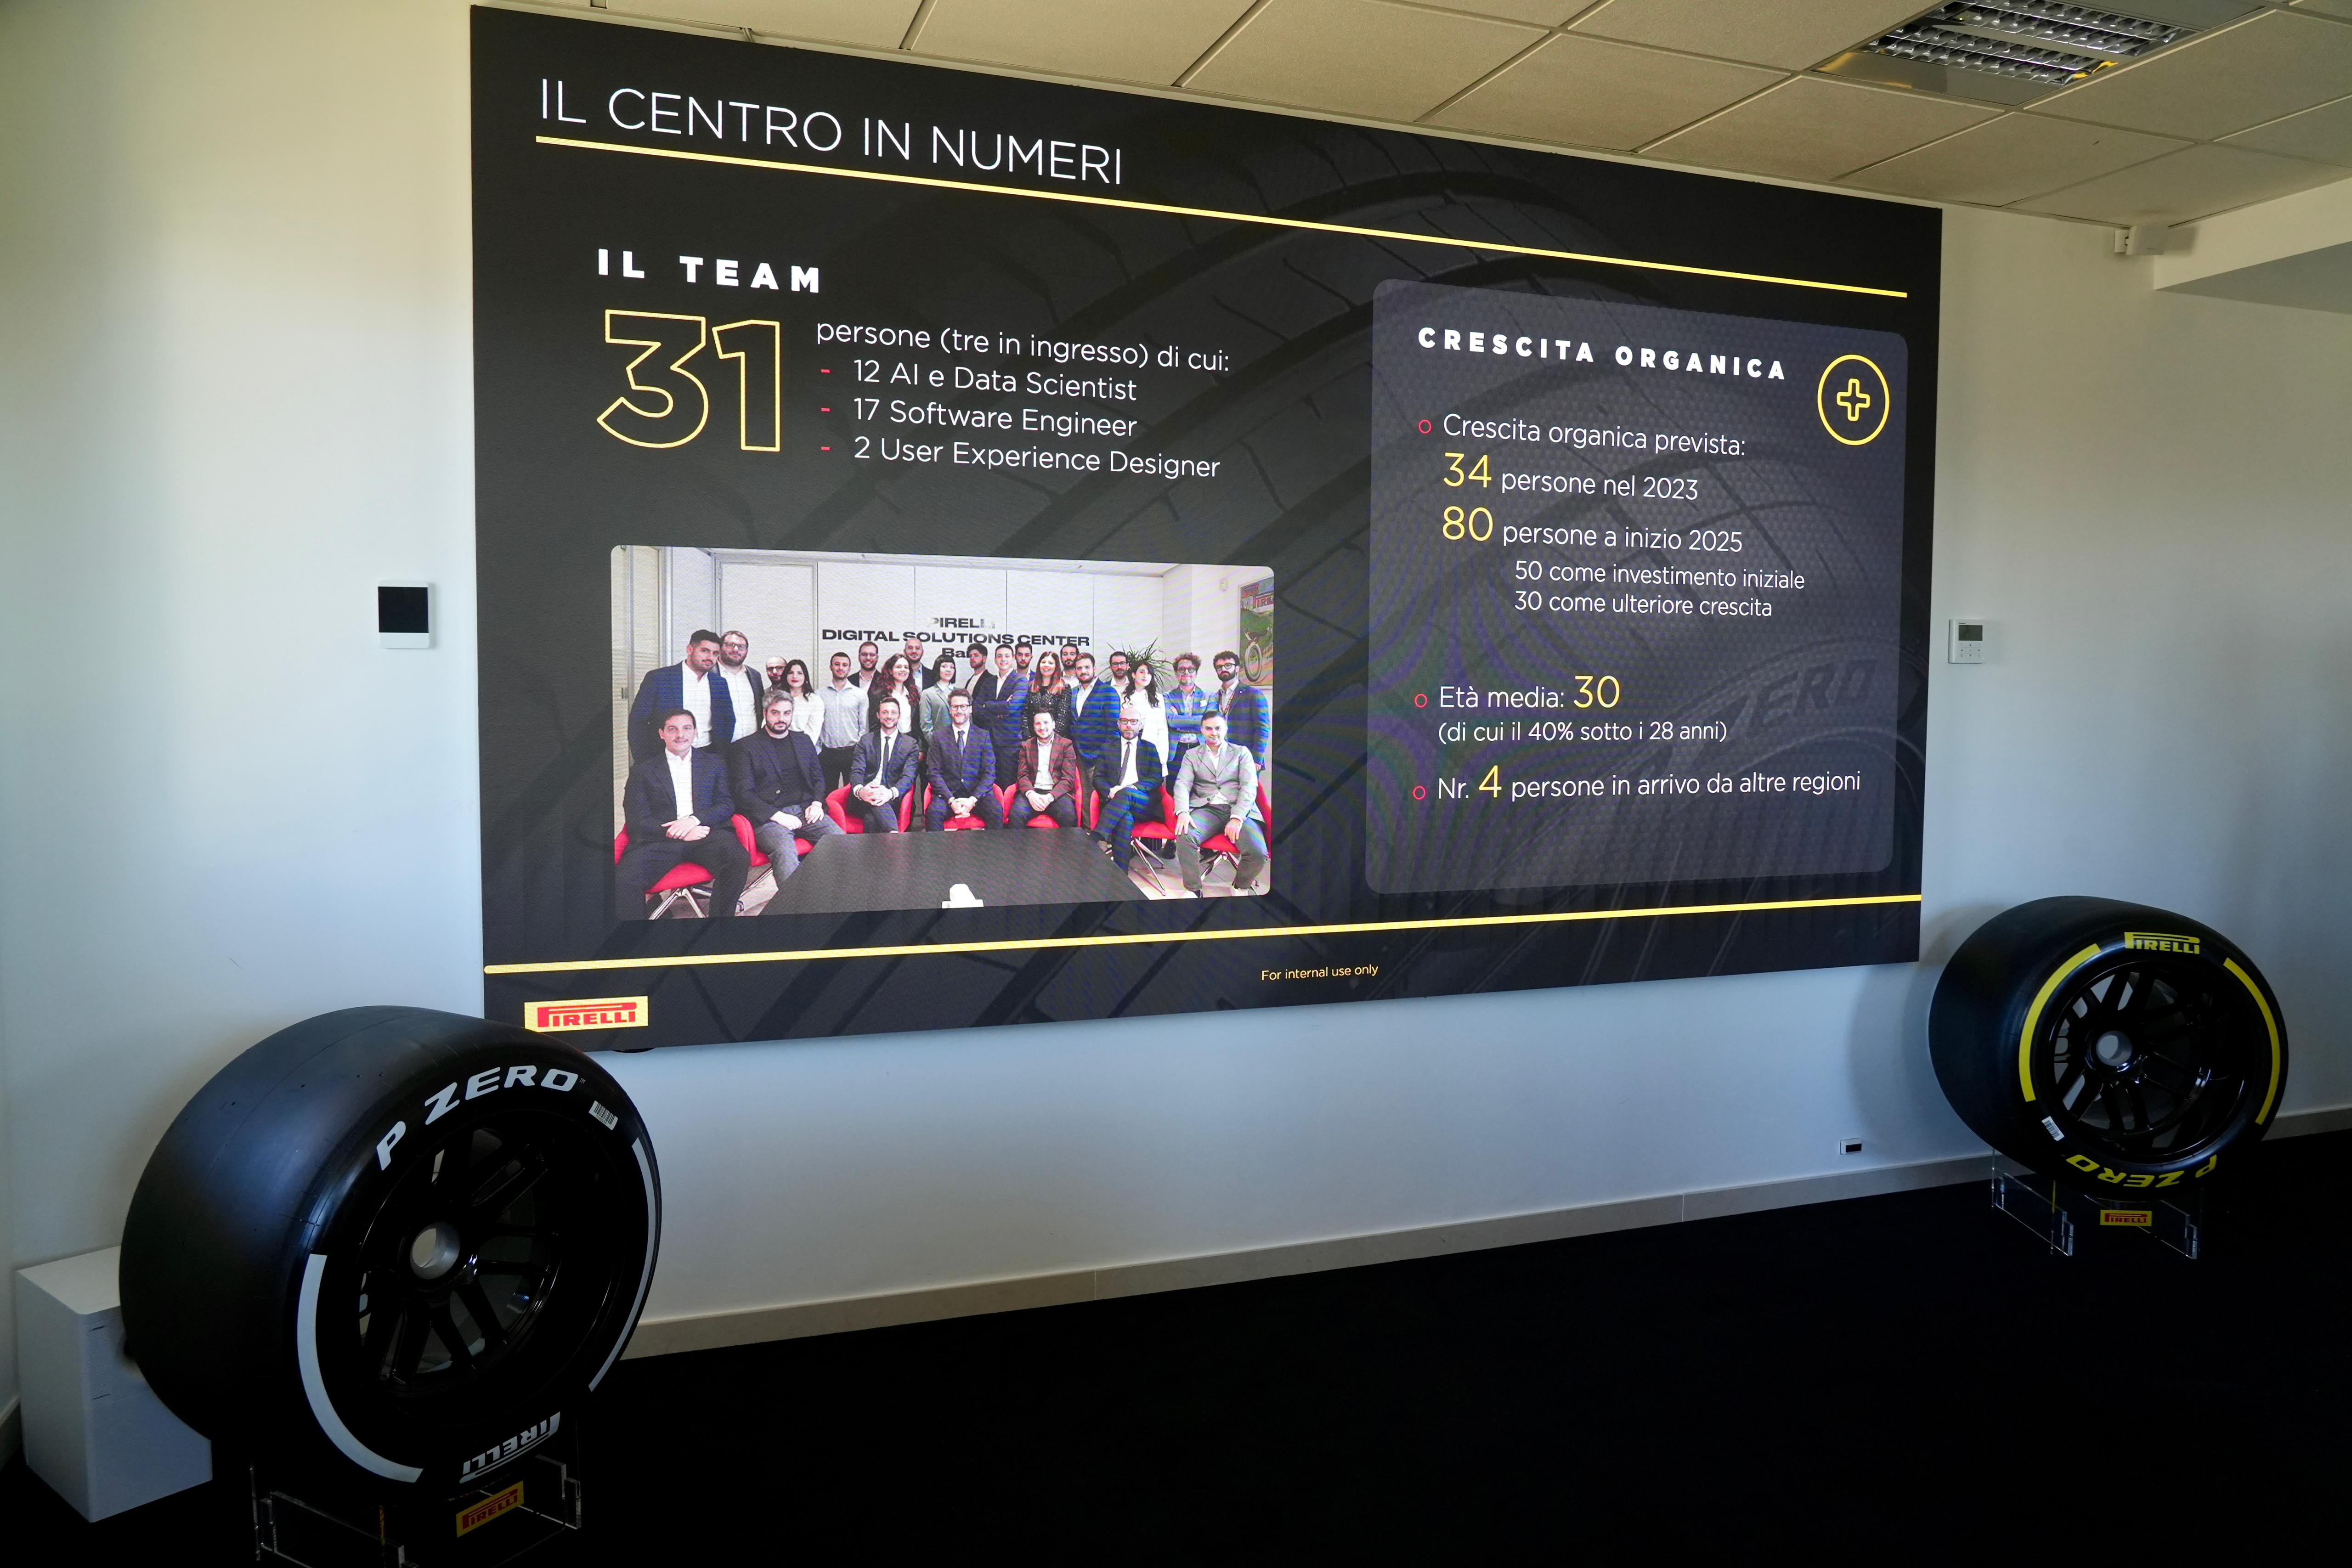 Galleria Pirelli: si rafforza a Bari, nel 2025 i dipendenti del Digital Solutions Center saliranno a 80 dai 50 previsti inizialmente - Diapositiva 7 di 13